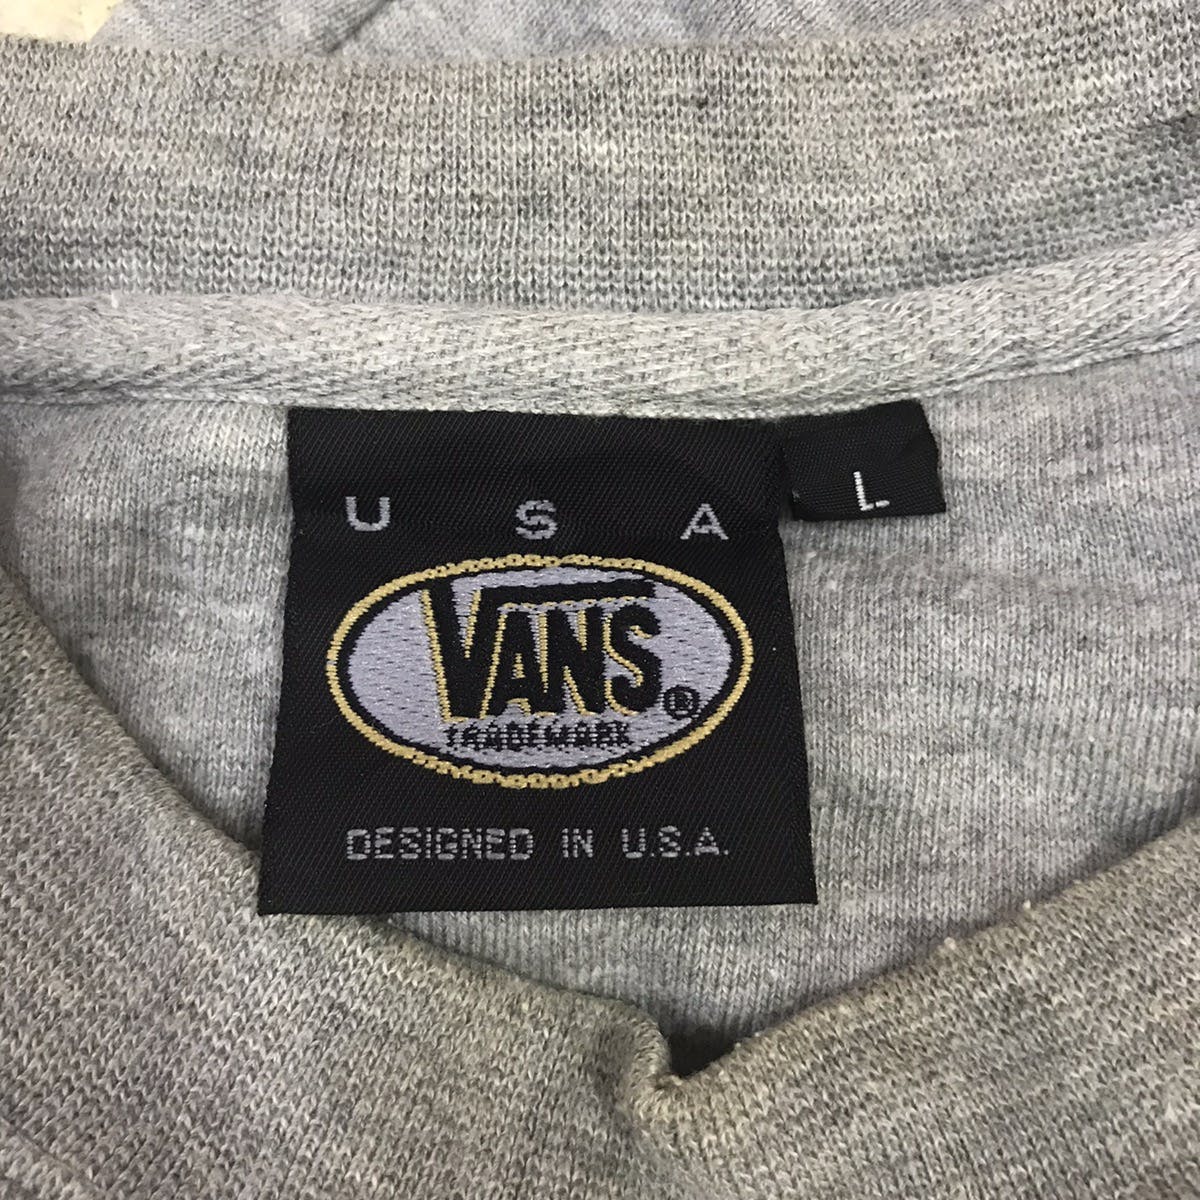 Vans Sweatshirt Designed in Usa - 16